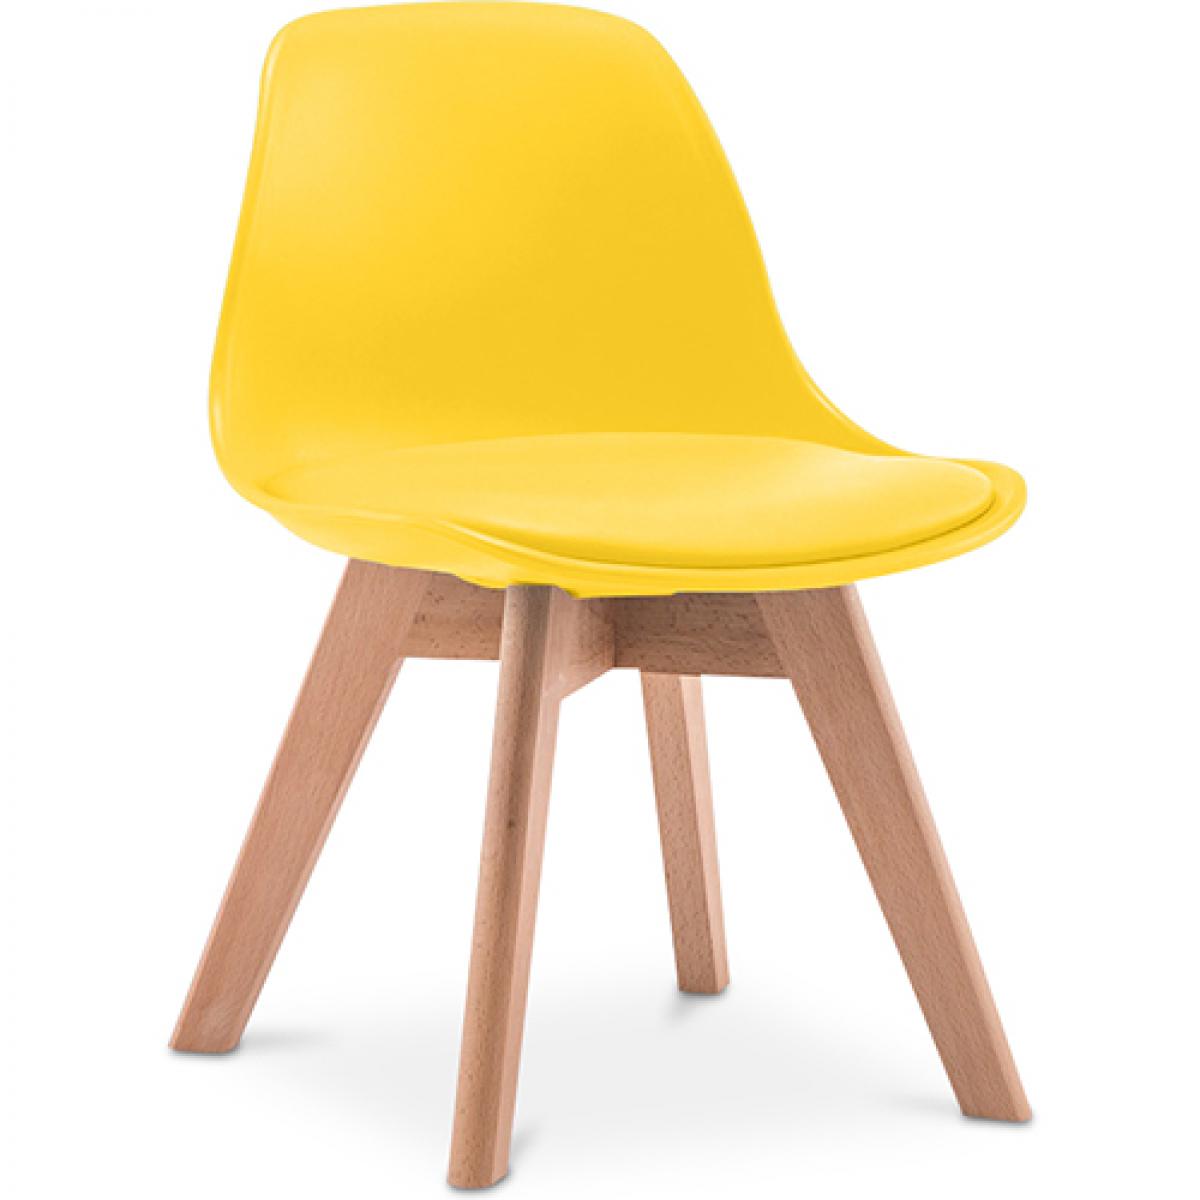 Privatefloor - Chaise d'enfant en bois et polypropylene rembourrée - Chaises